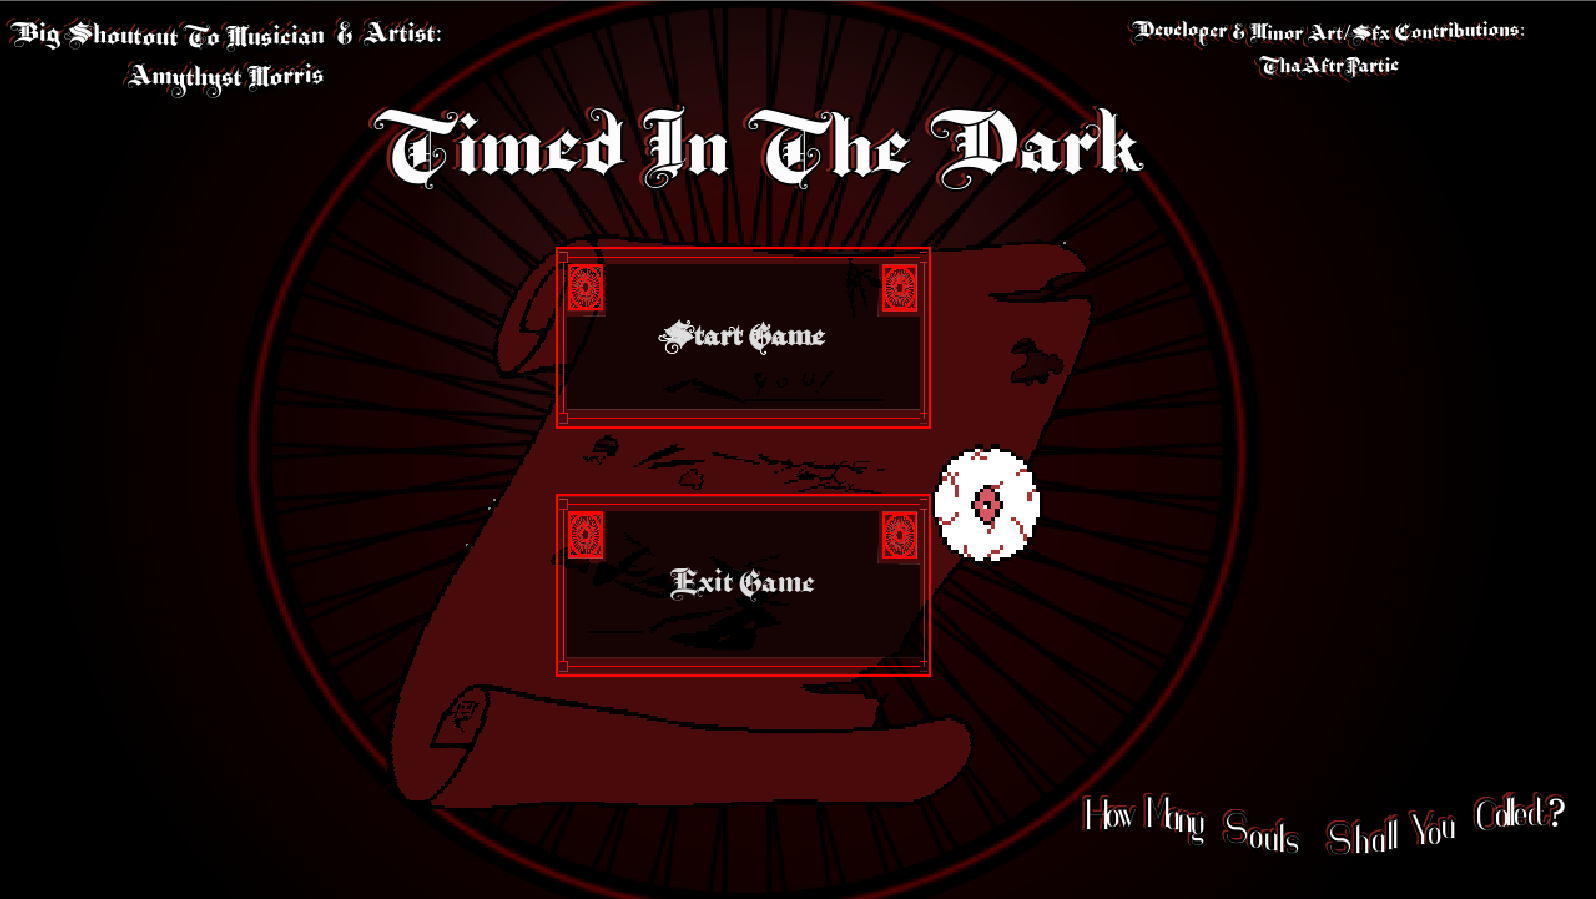 Timed in the Dark